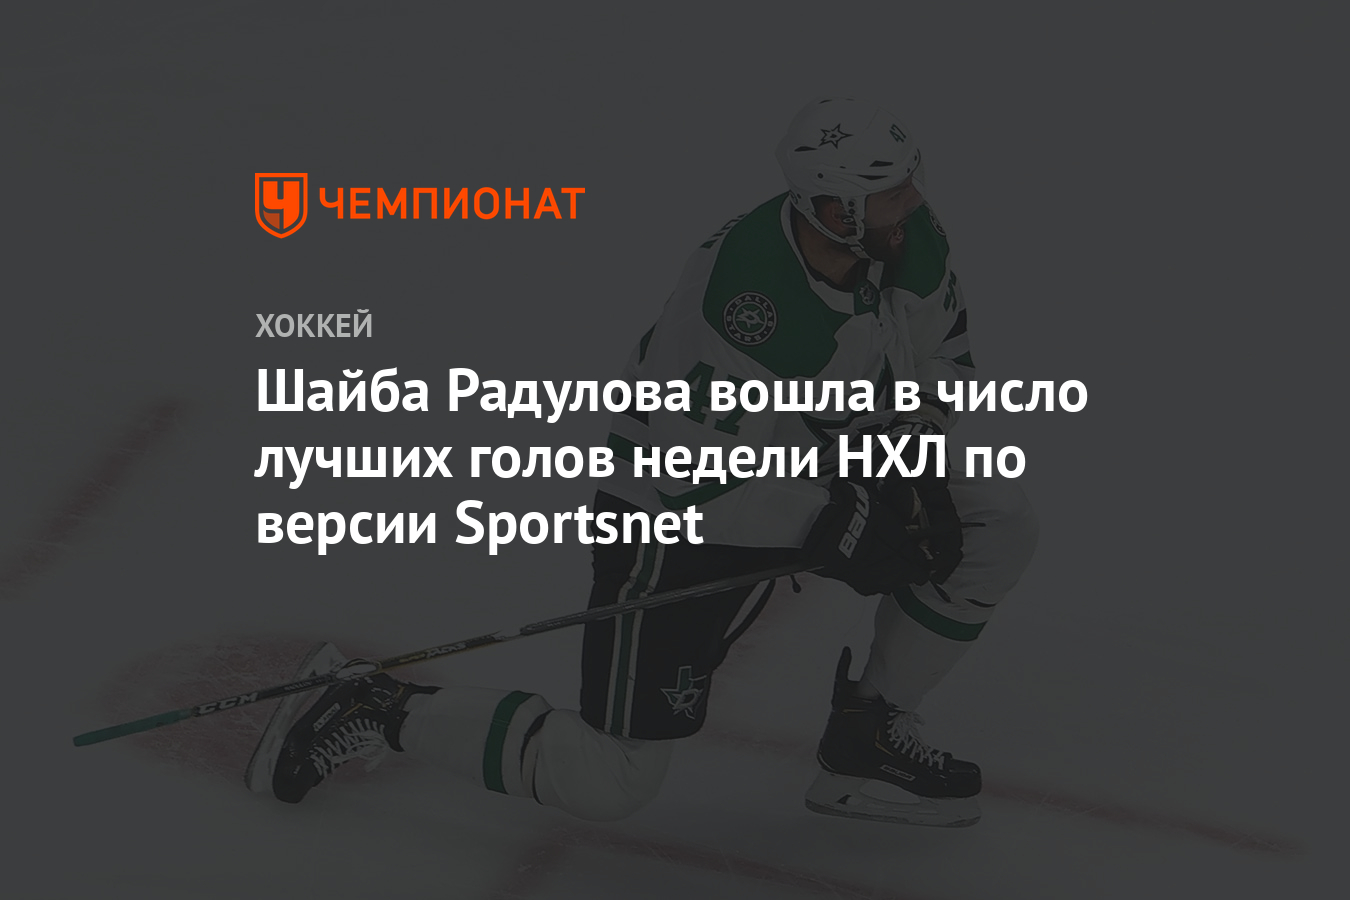 Шайба Радулова вошла в число лучших голов недели НХЛ по версии Sportsnet - Чемпионат